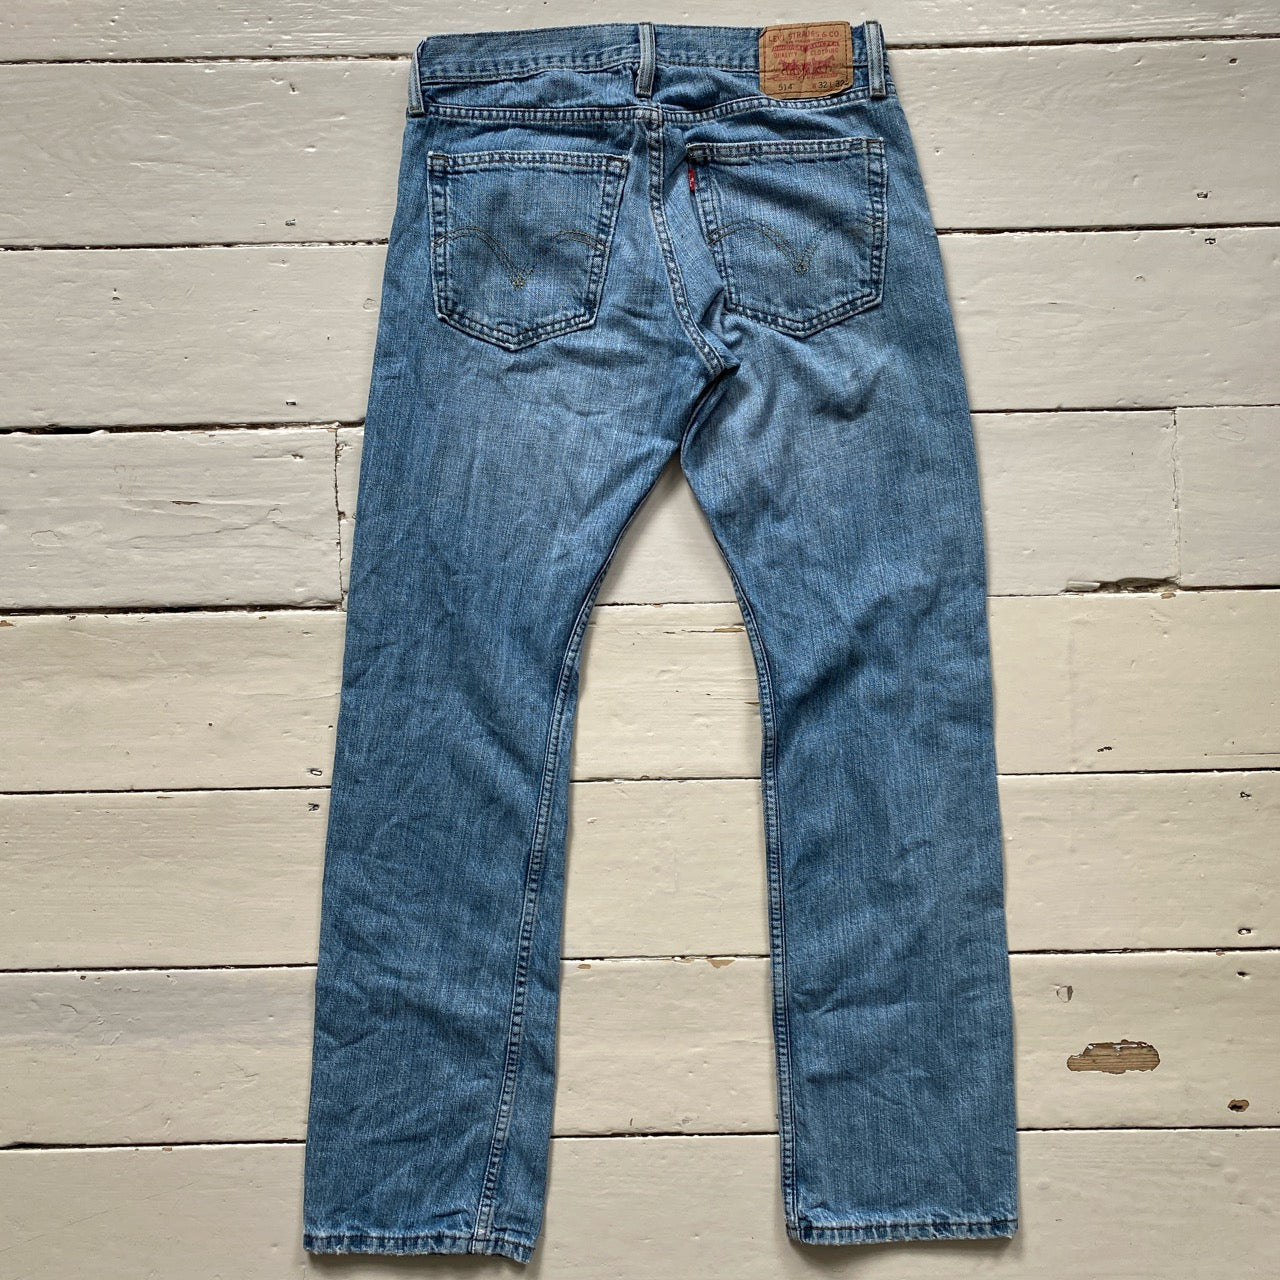 Levis 514 Light Wash Jeans (32/32)